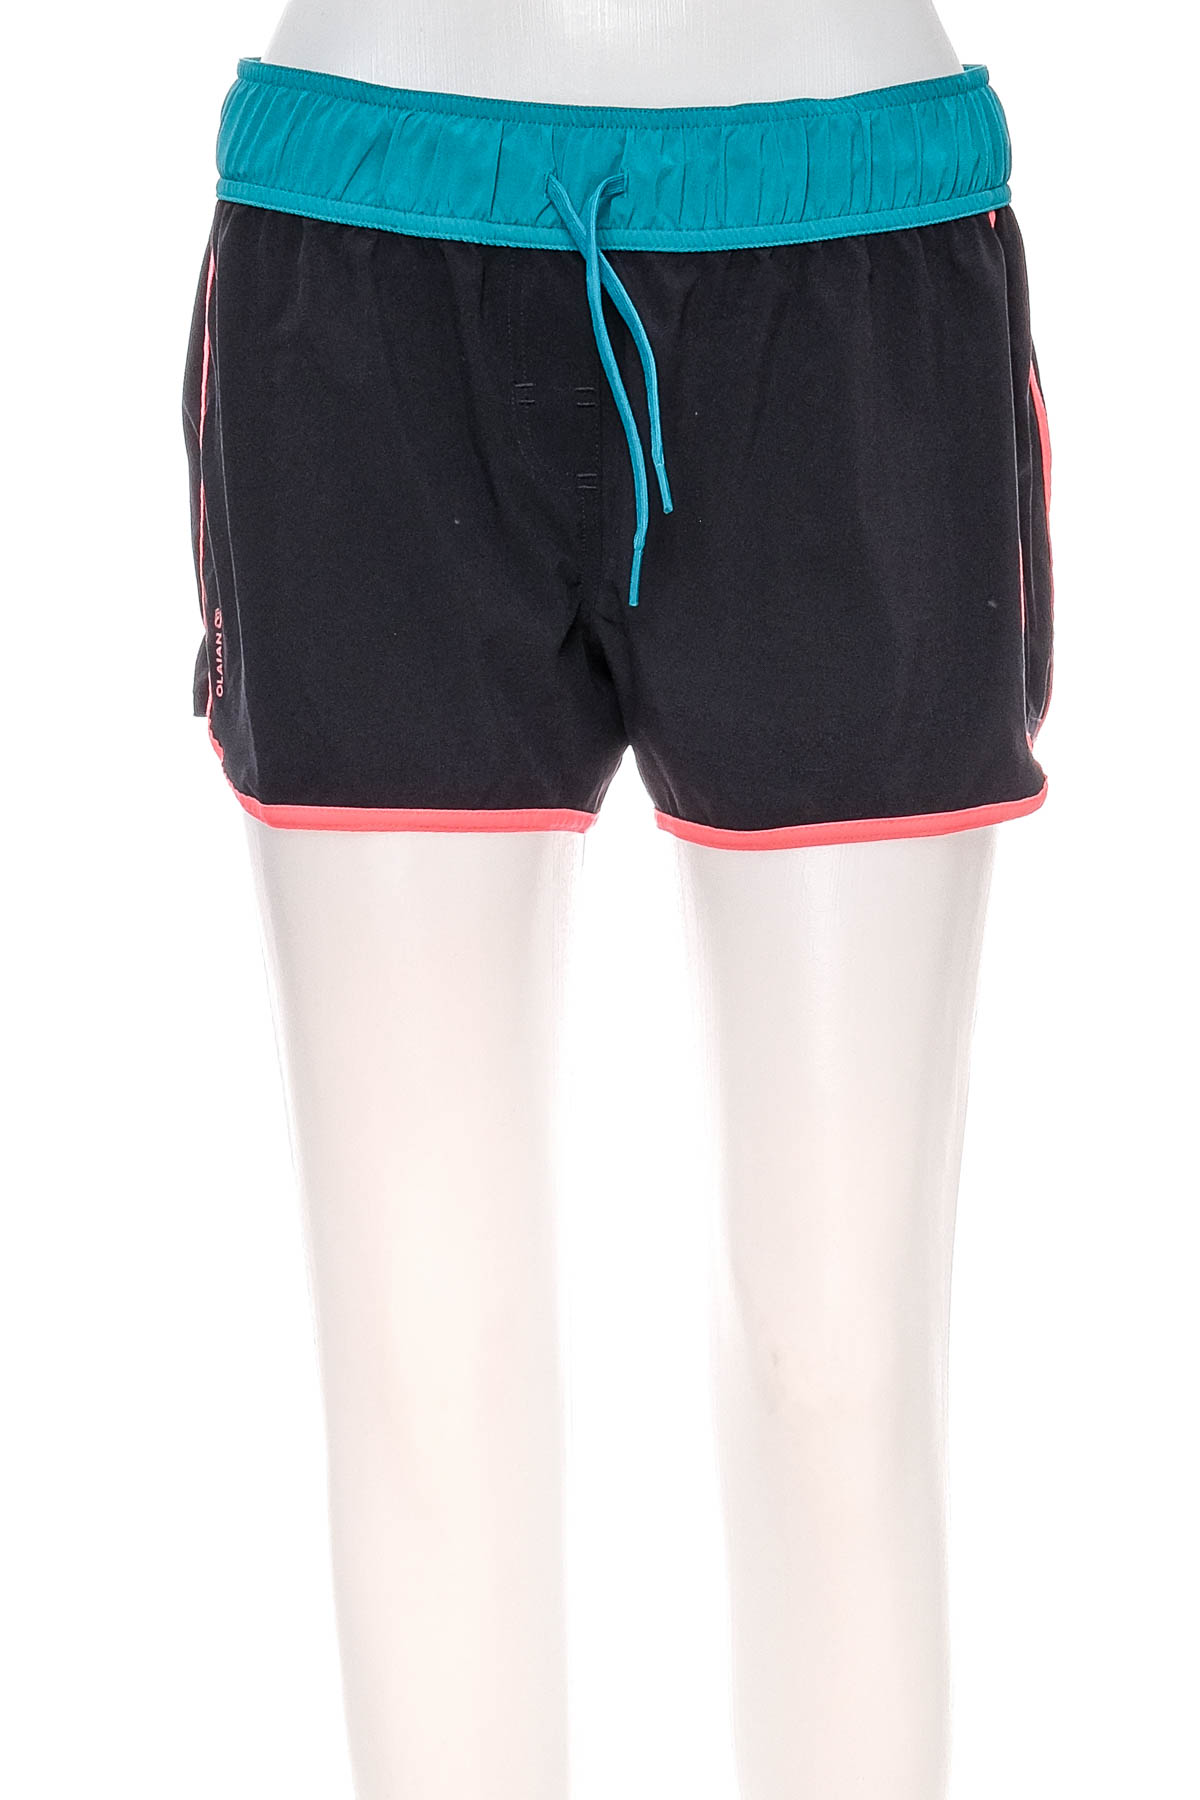 Women's shorts - OLAIAN - 0